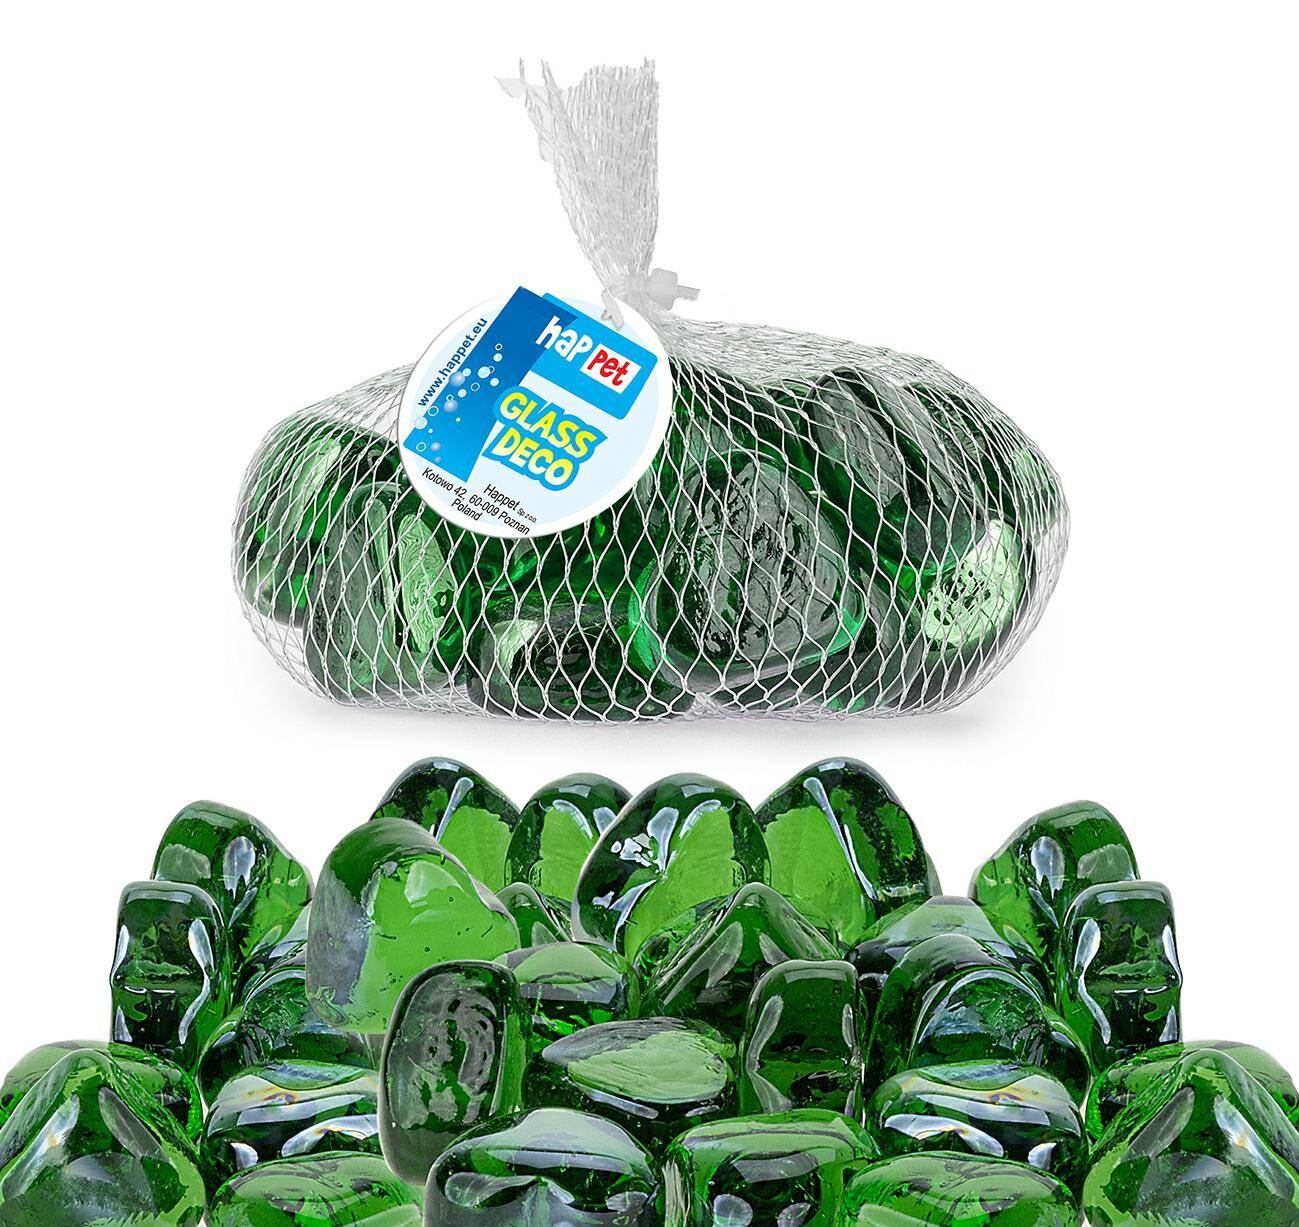 Ozdoba serce Happet OS14 szklane ziel. w siatce (Zdjęcie 1)